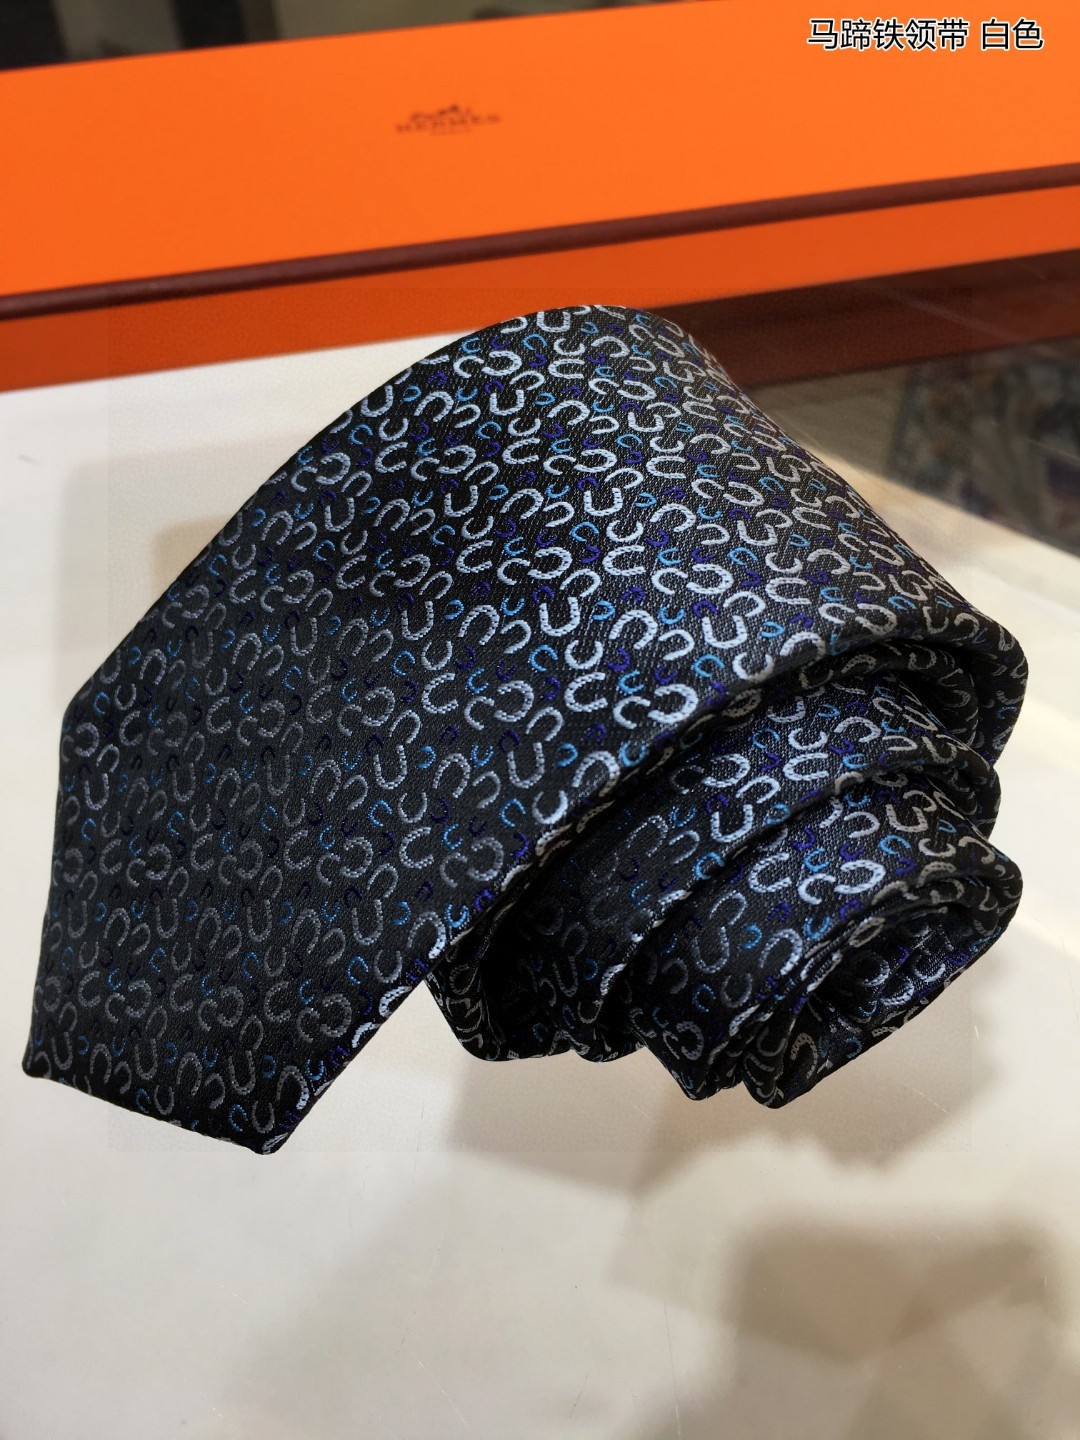 特价男士新款领带系列马蹄铁领带稀有H家每年都有一千条不同印花的领带面世从最初的多以几何图案表现骑术活动为